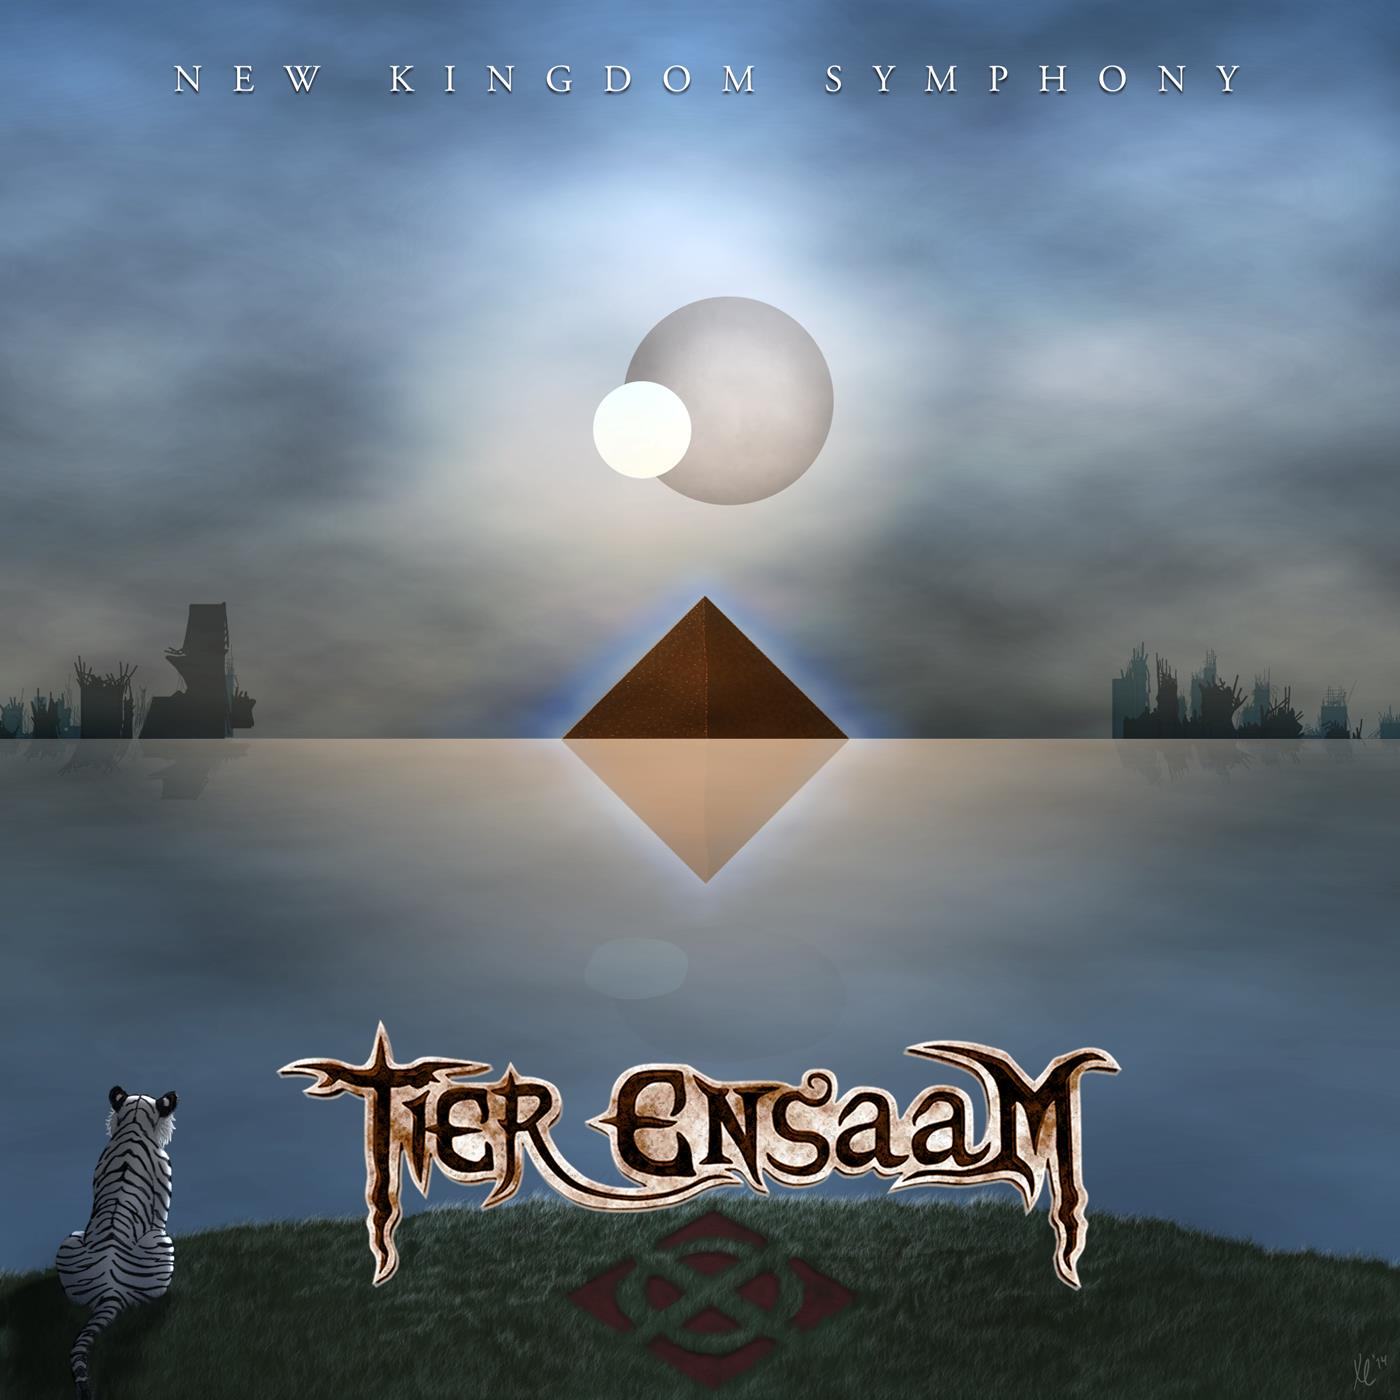 New Kingdom Symphony